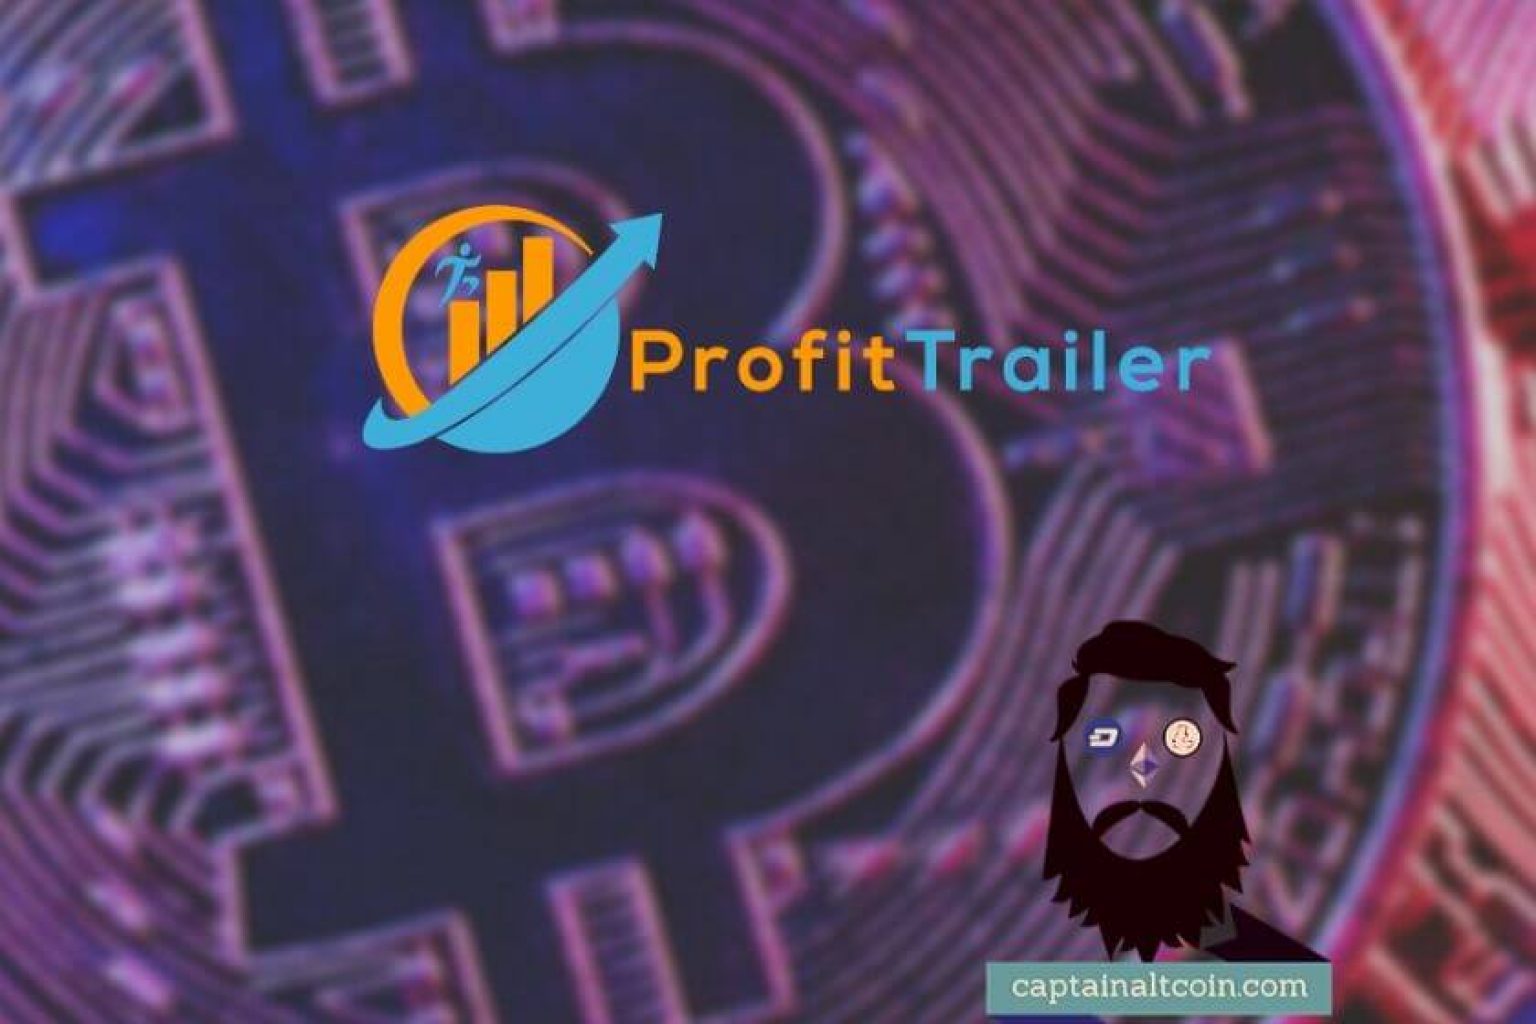 Profit Trailer Review 2020 -Is Profit Trailer Worth it?